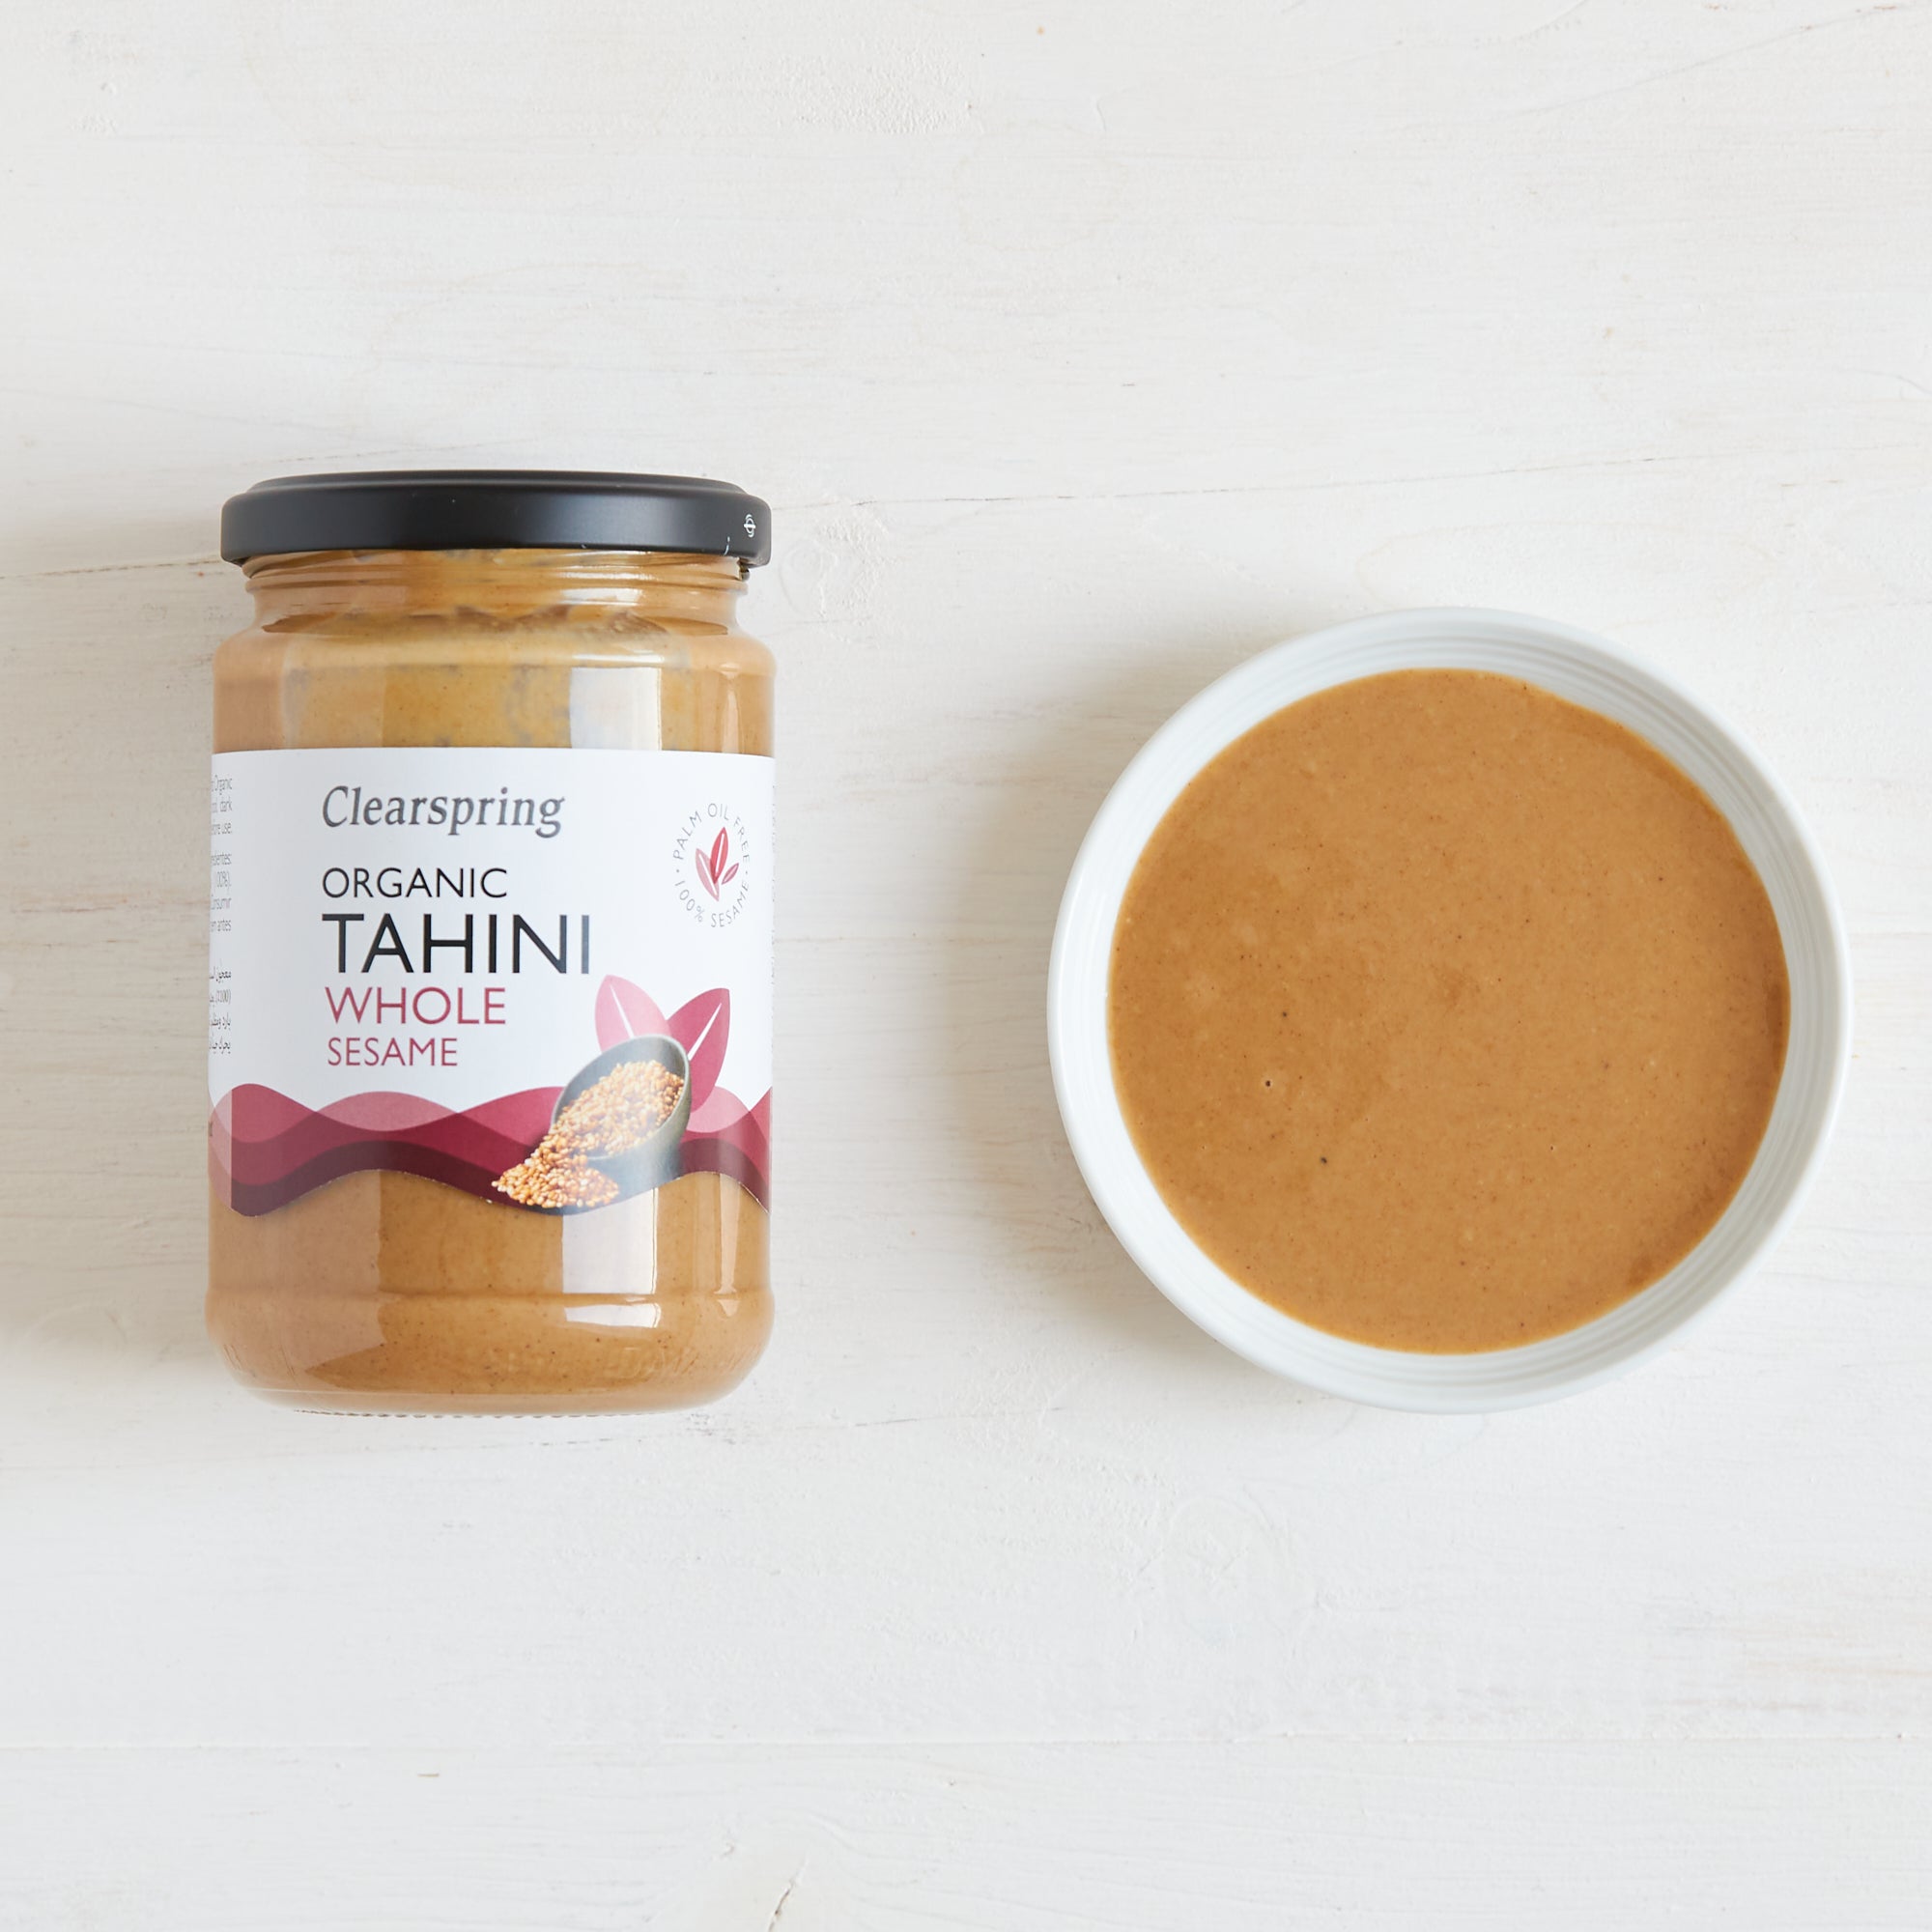 Clearspring Organic Tahini - Whole Sesame (6 Pack)